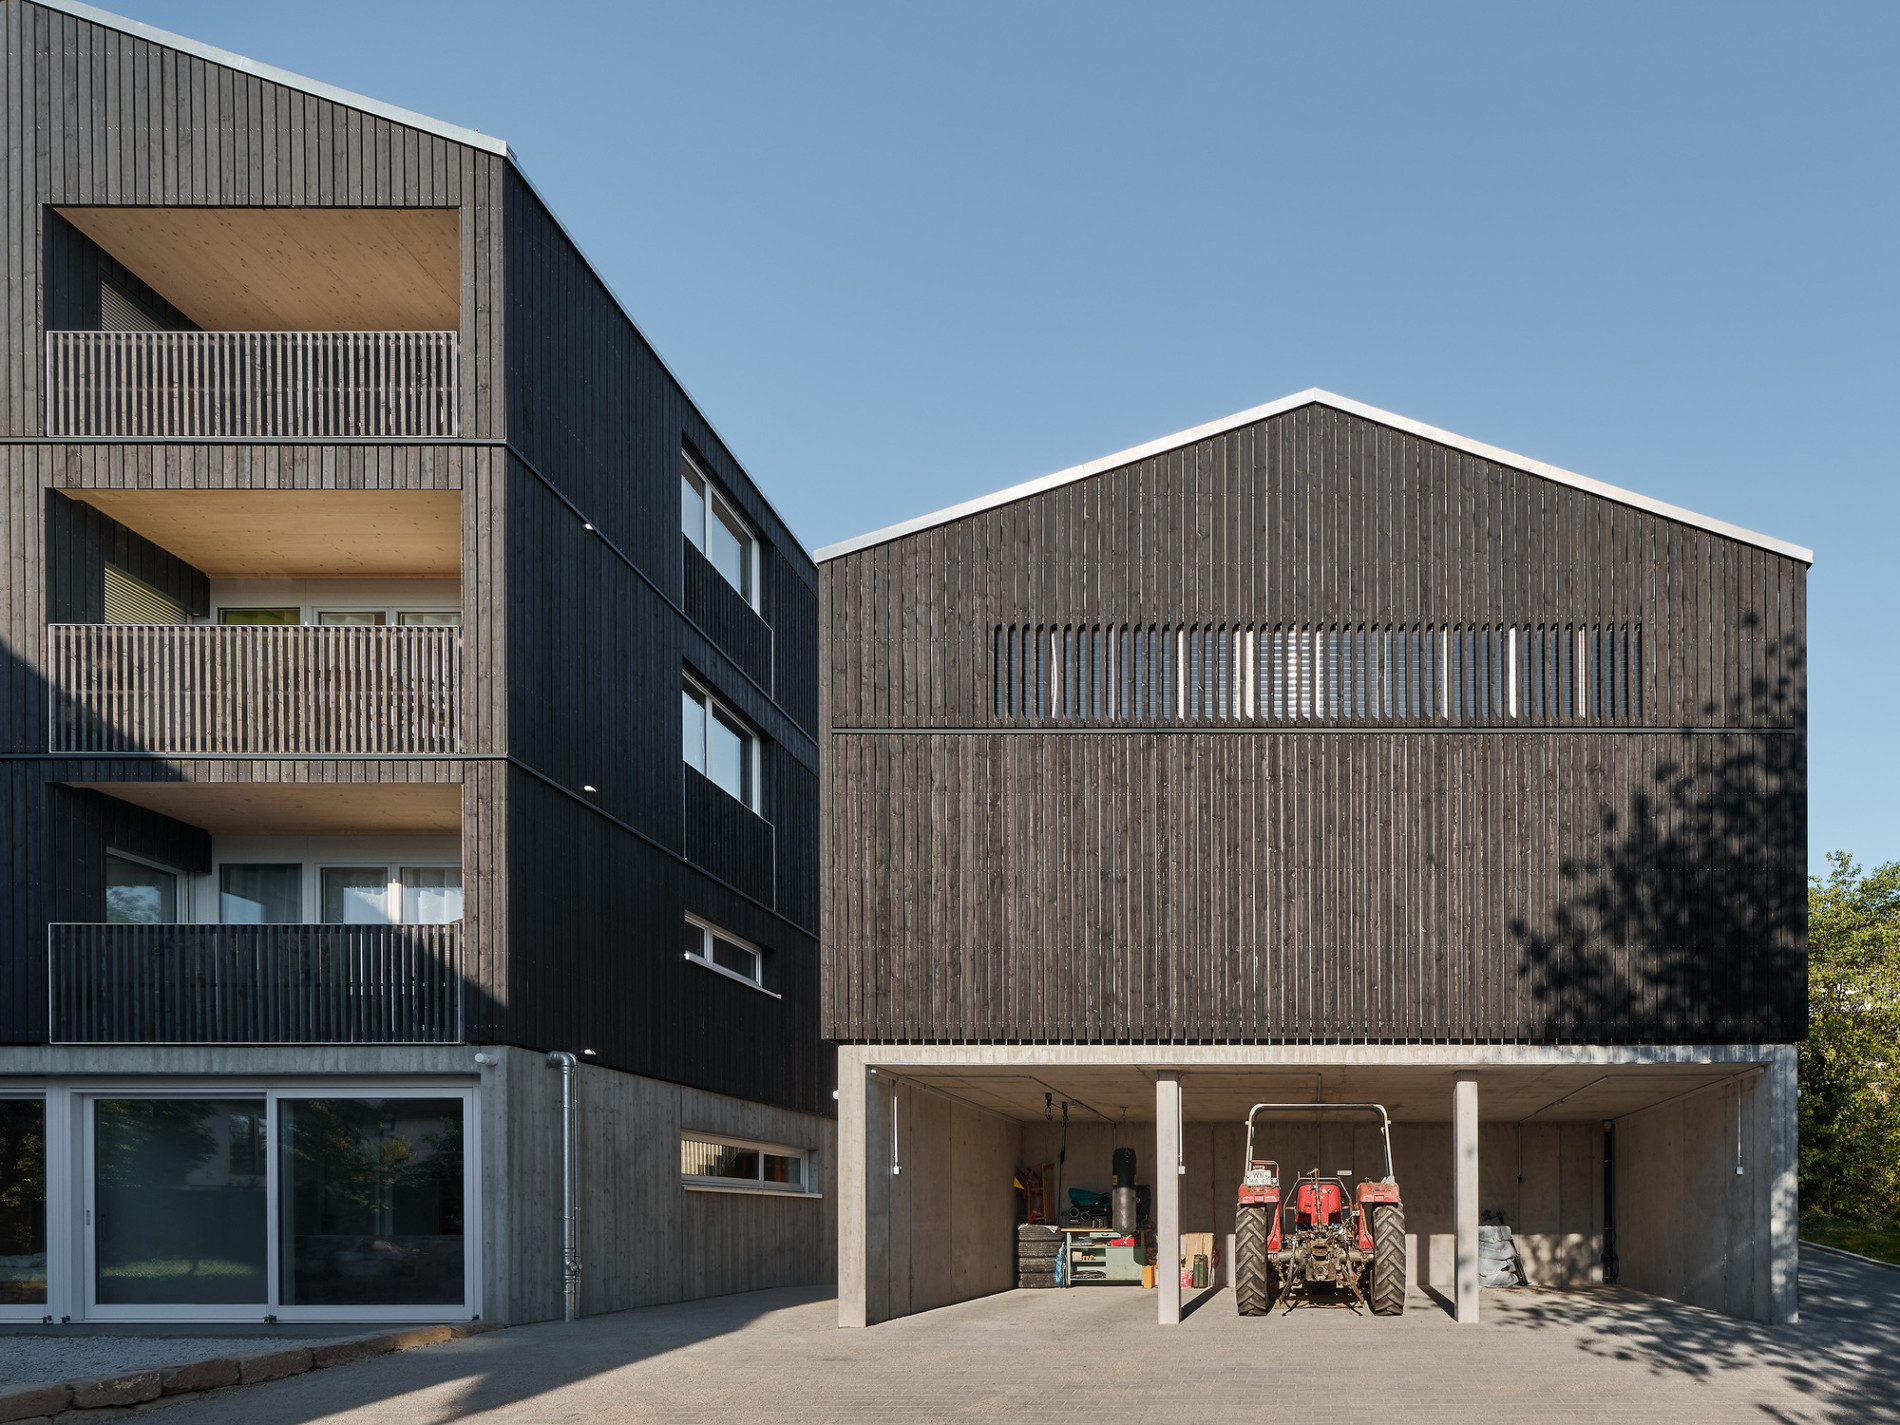 Housing and Workshop Weilerstraße / CAPE, Prof. Markus Binder &amp; Schleicher ragaller architekten | ArchDaily